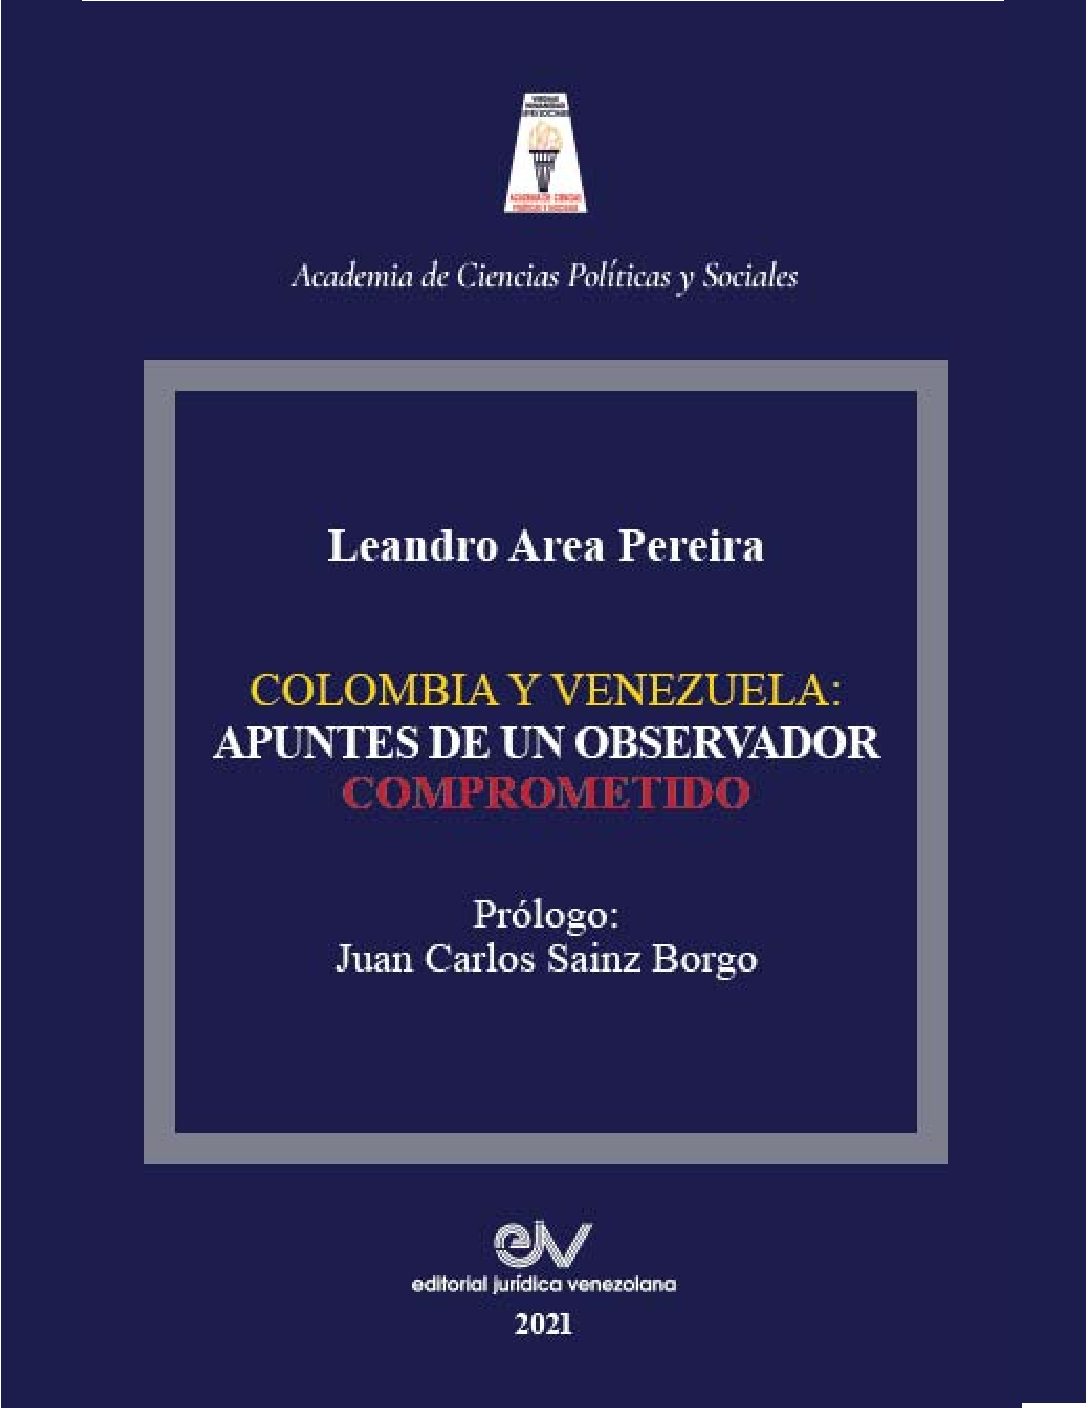 Colombia y Venezuela: apuntes de un observador comprometido. Autor: Leandro Area Pereira